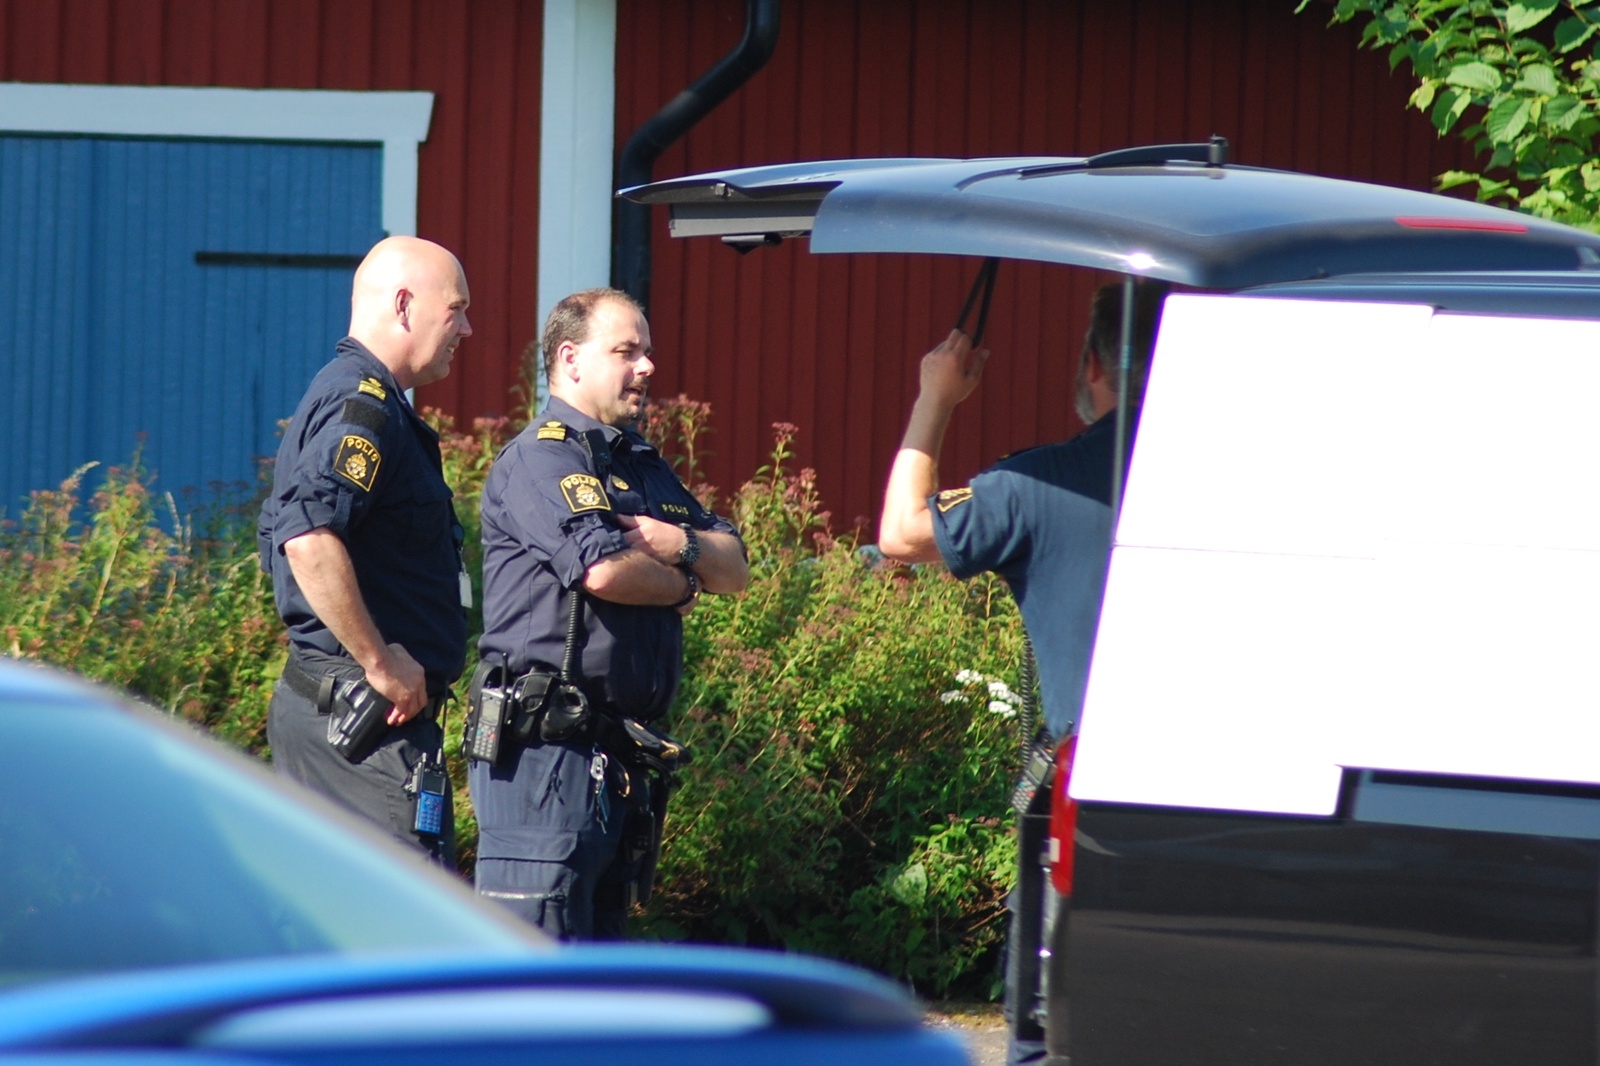 Polisinsatsen pågår i Hästveda.